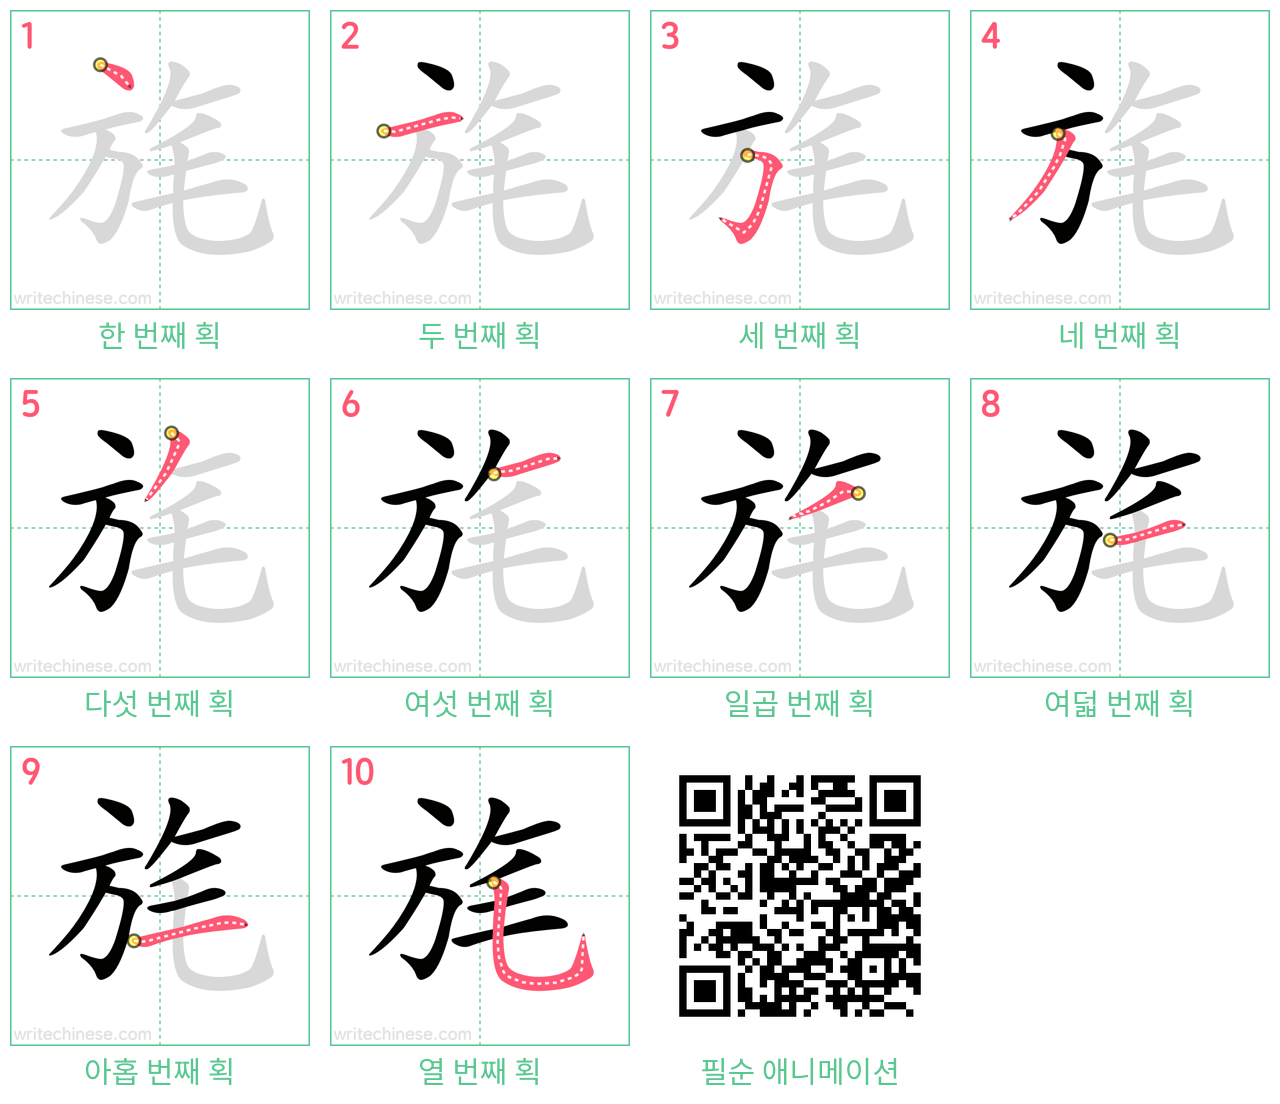 旄 step-by-step stroke order diagrams